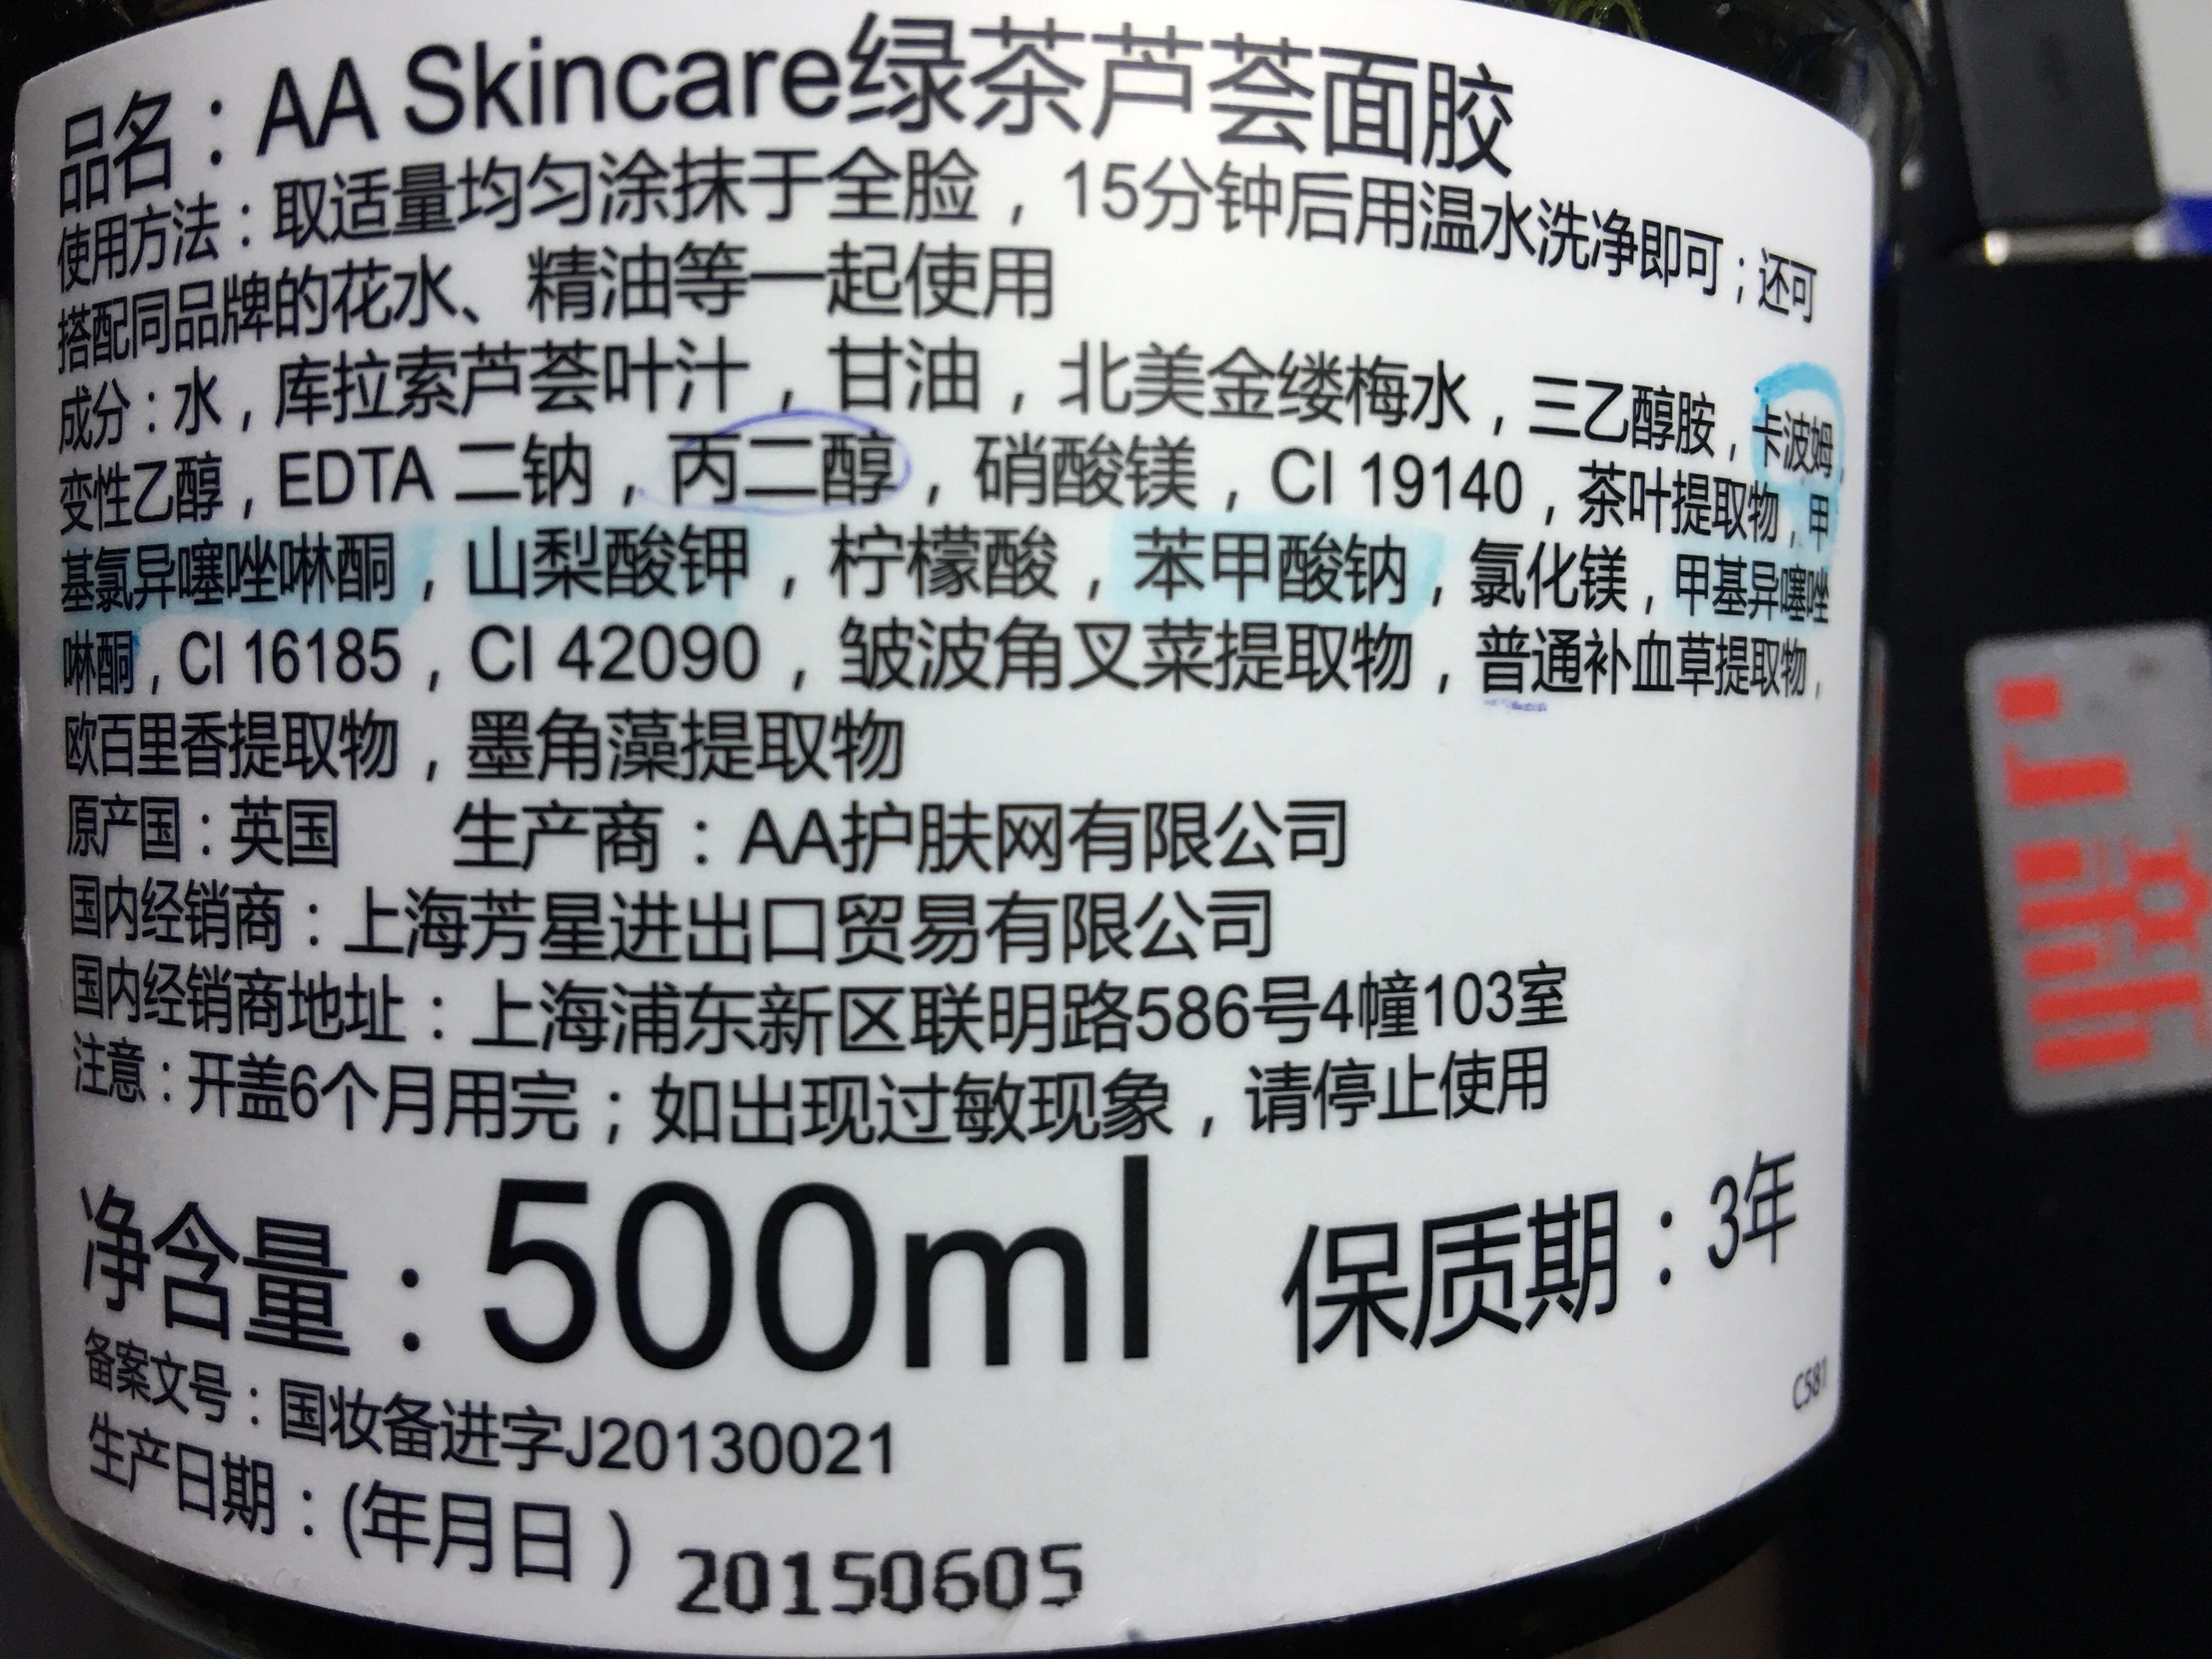 英国AA skincare 绿茶芦荟眼胶,或者绿茶芦荟胶